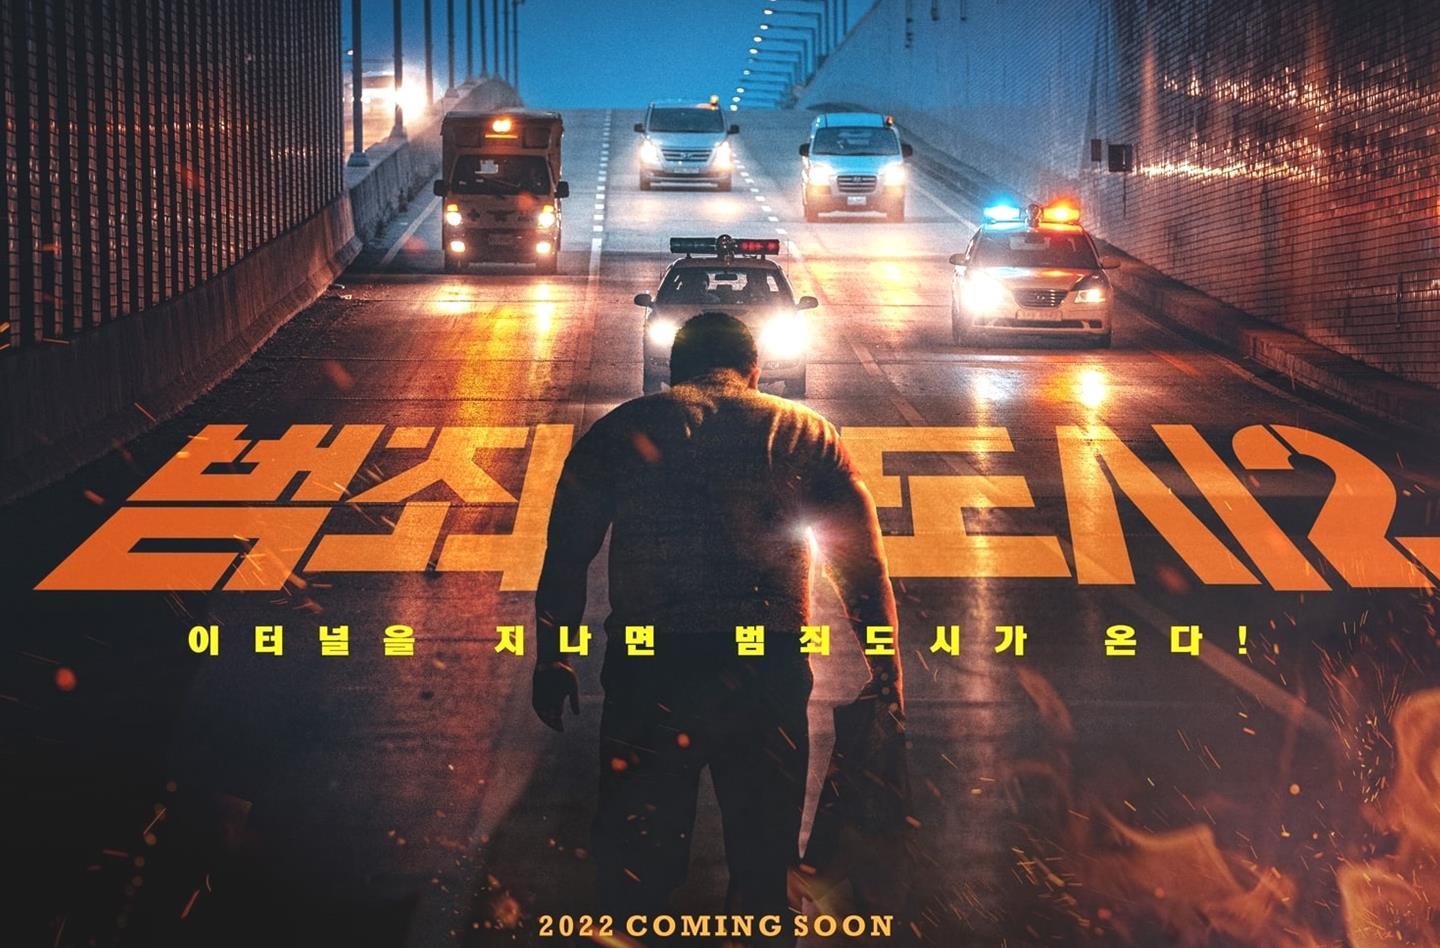 I migliori film Thriller coreani in arrivo del 2022 da guardare 1IG4R 5 7